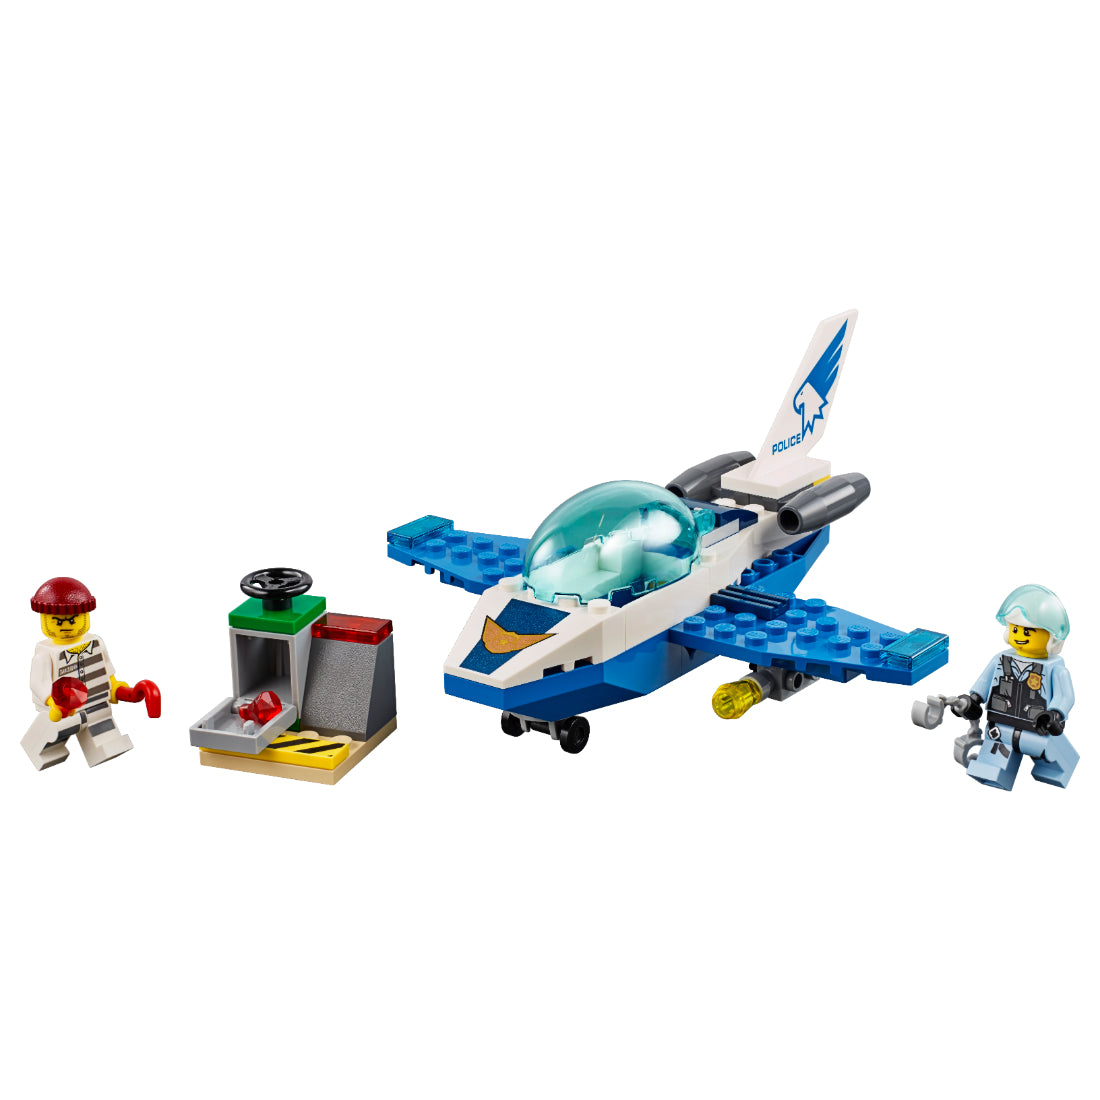 LEGO® City Policía Aérea Jet Patrua (60206)